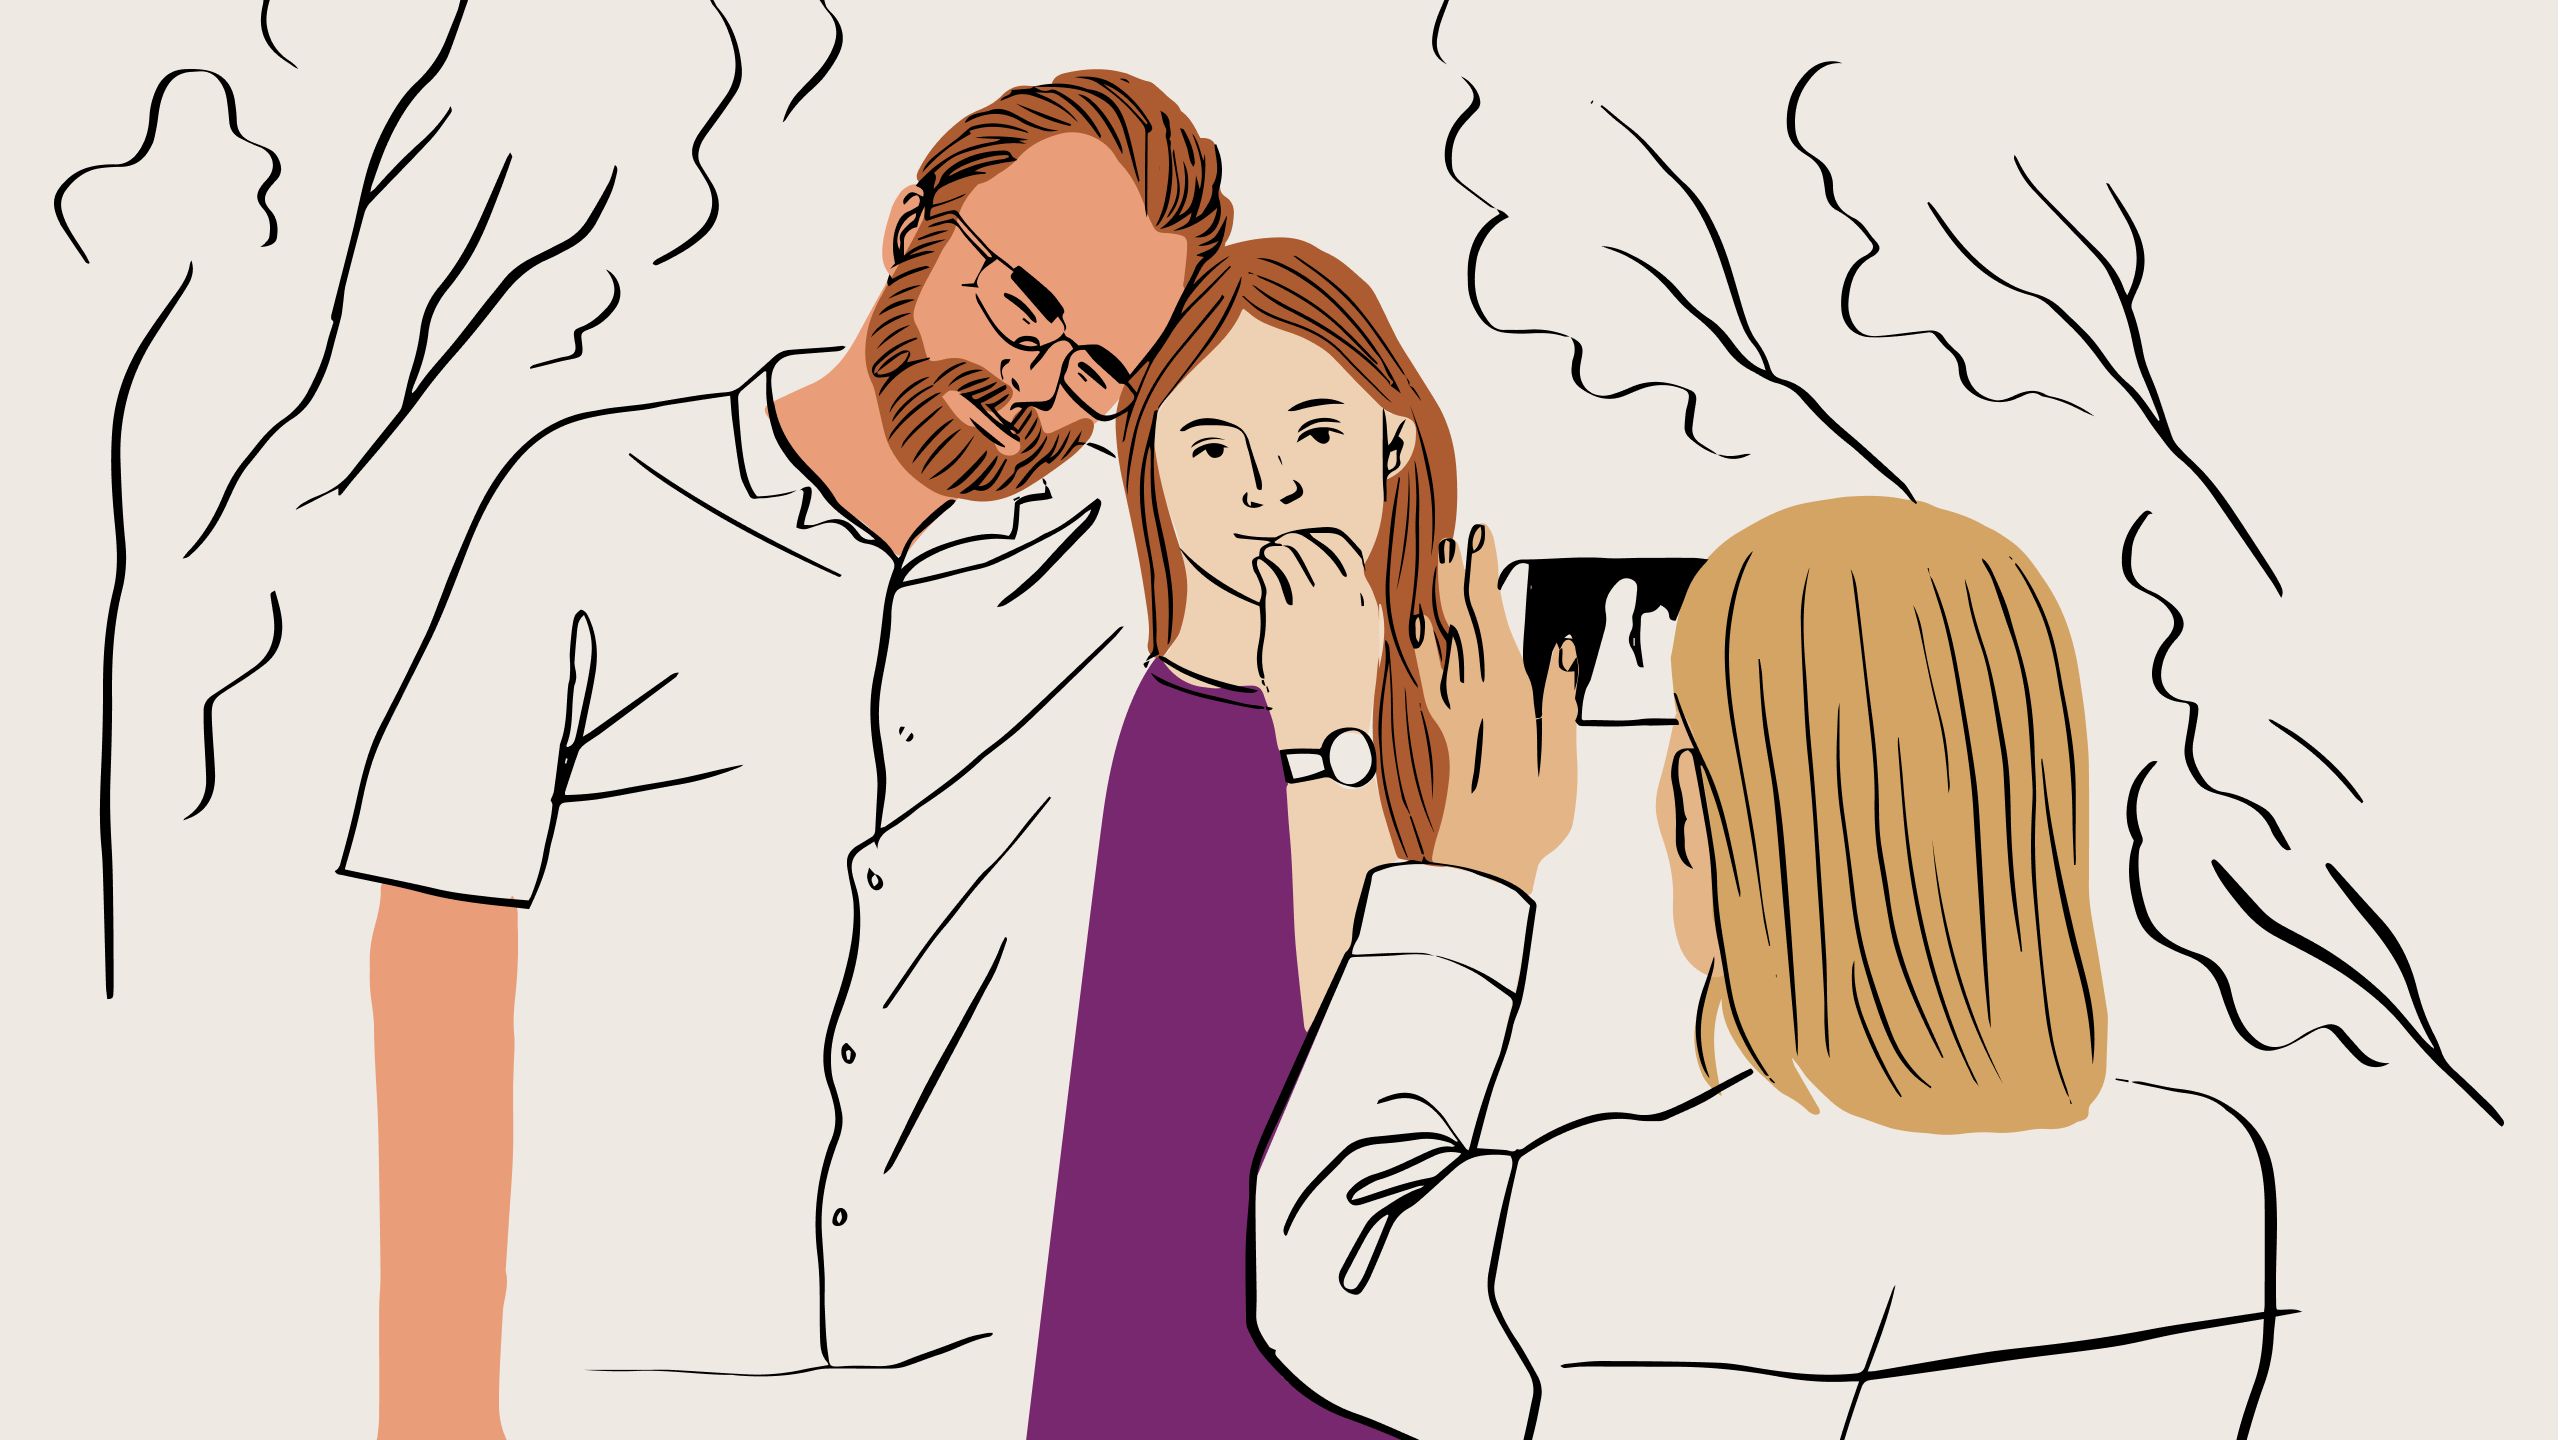 Uma ilustração de uma pessoa tirando uma foto de um casal usando um celular